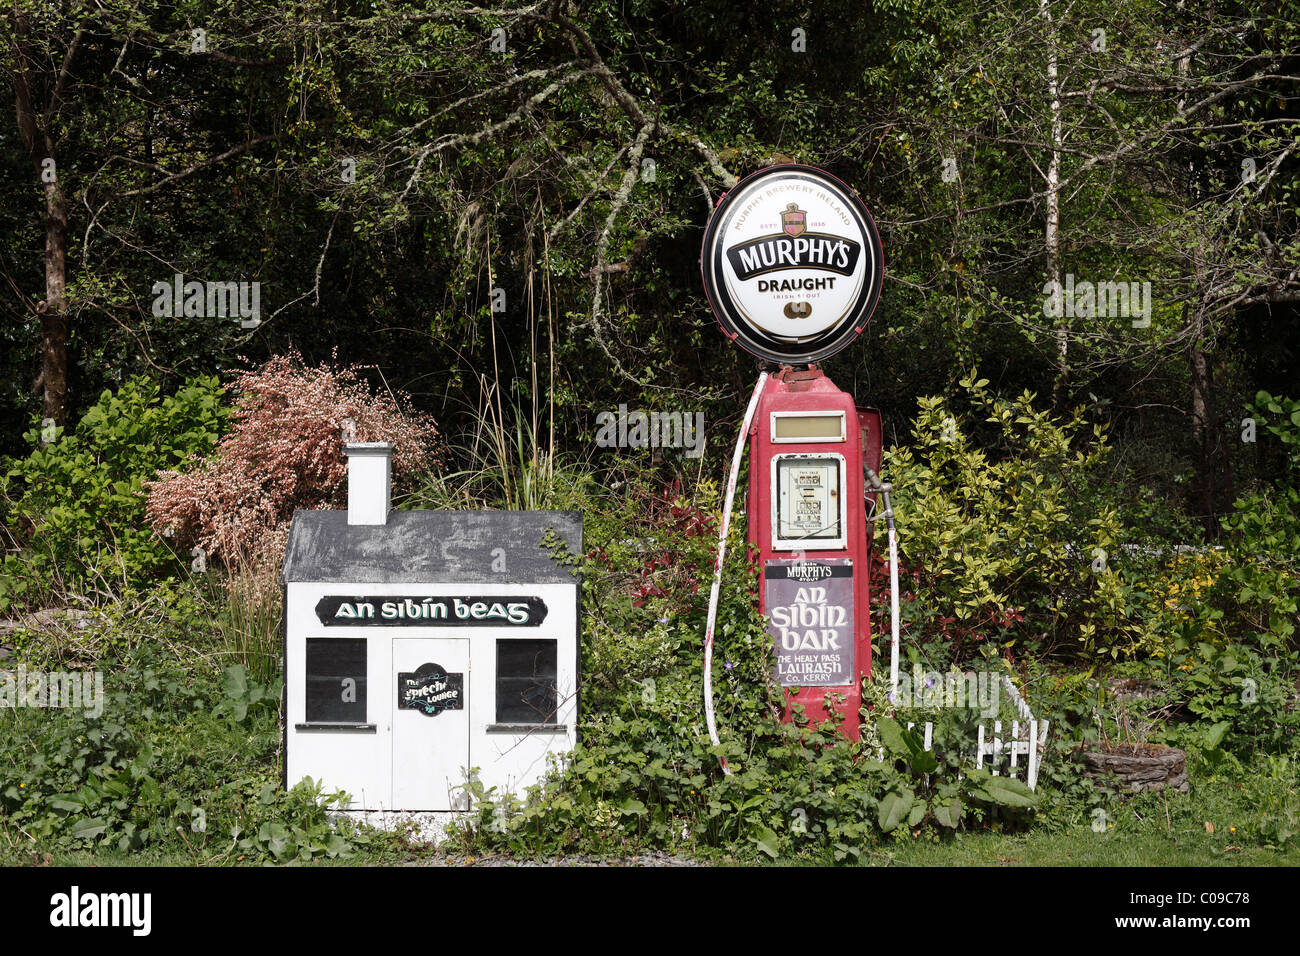 Vecchia Pompa del gas con la pubblicità per Murphy's birra, stazione di gas in Lauragh, penisola di Beara, County , Ireland Foto Stock